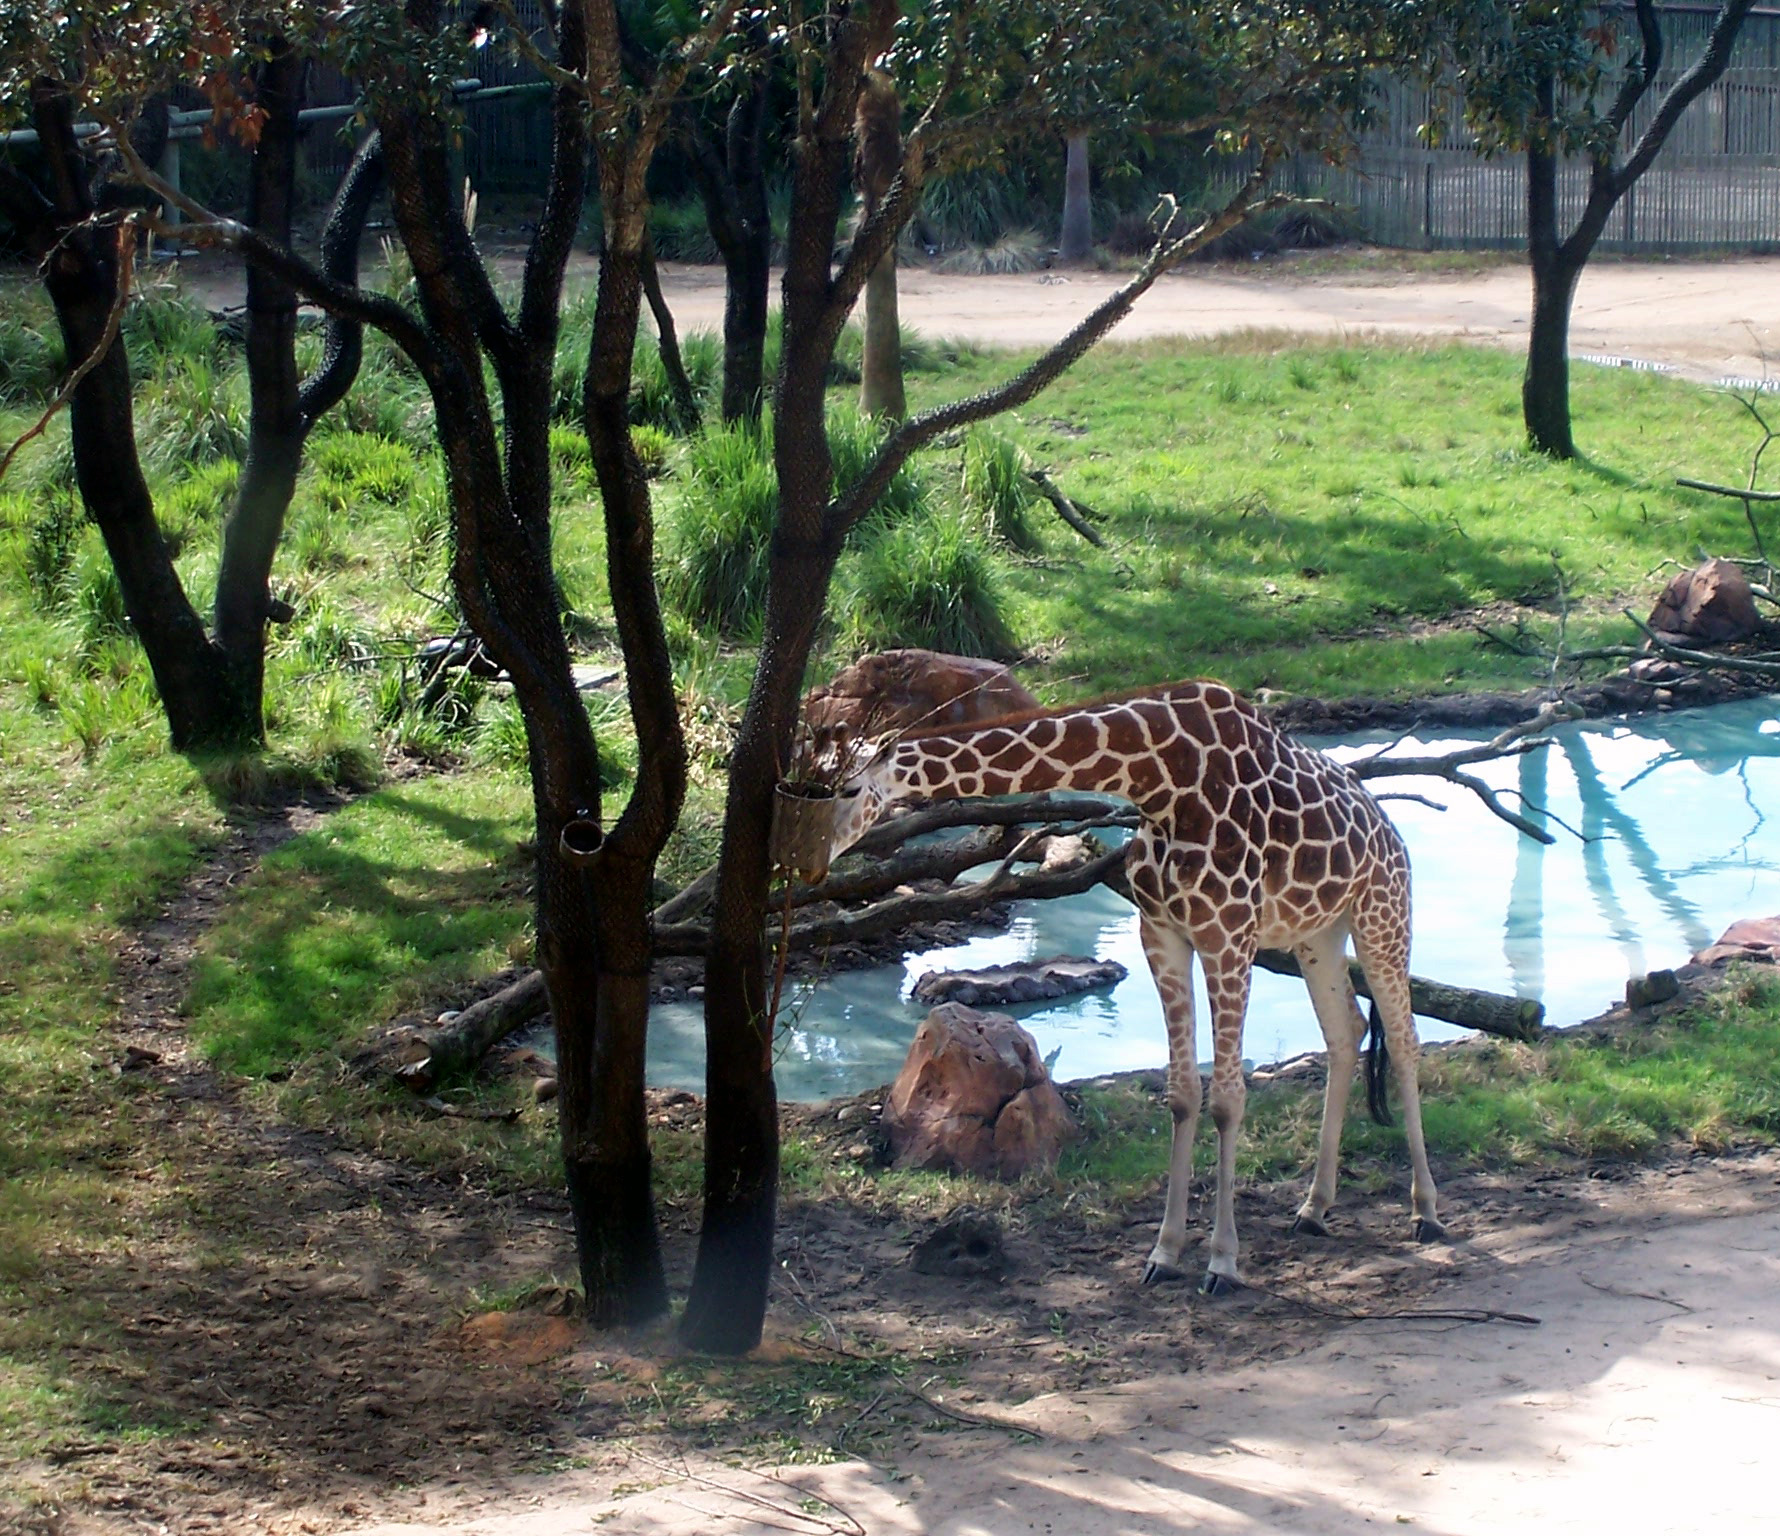 Giraffe at DAKL.